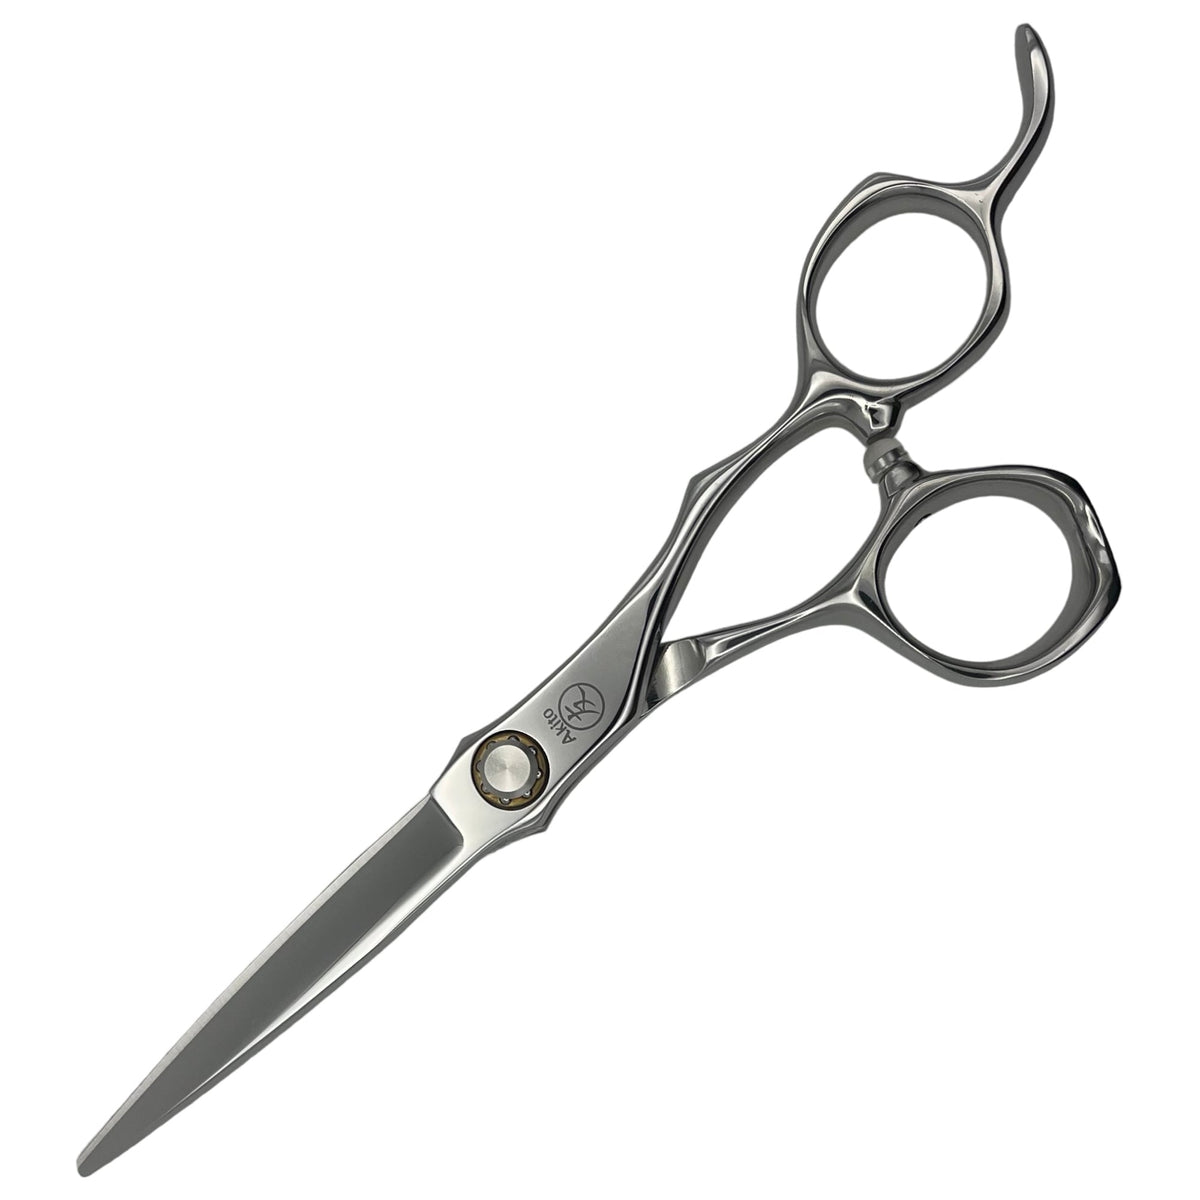 Kasai X Hair Scissors 6.0 inch